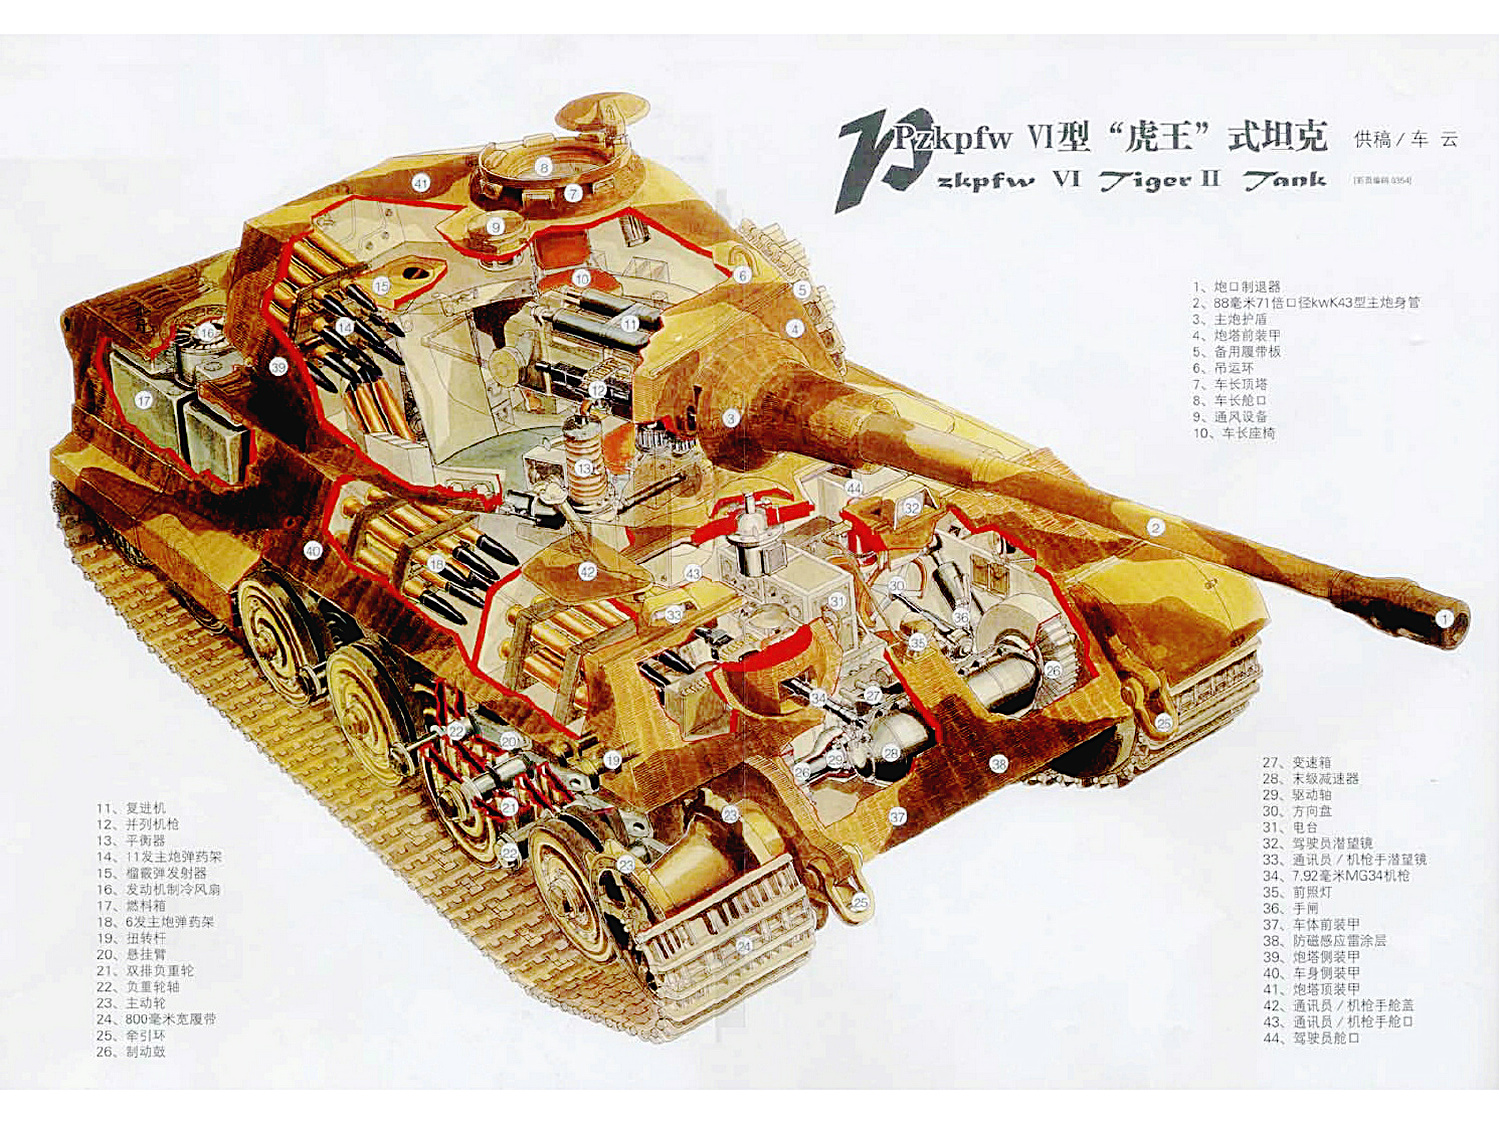 虎王式重型坦克結構示意圖